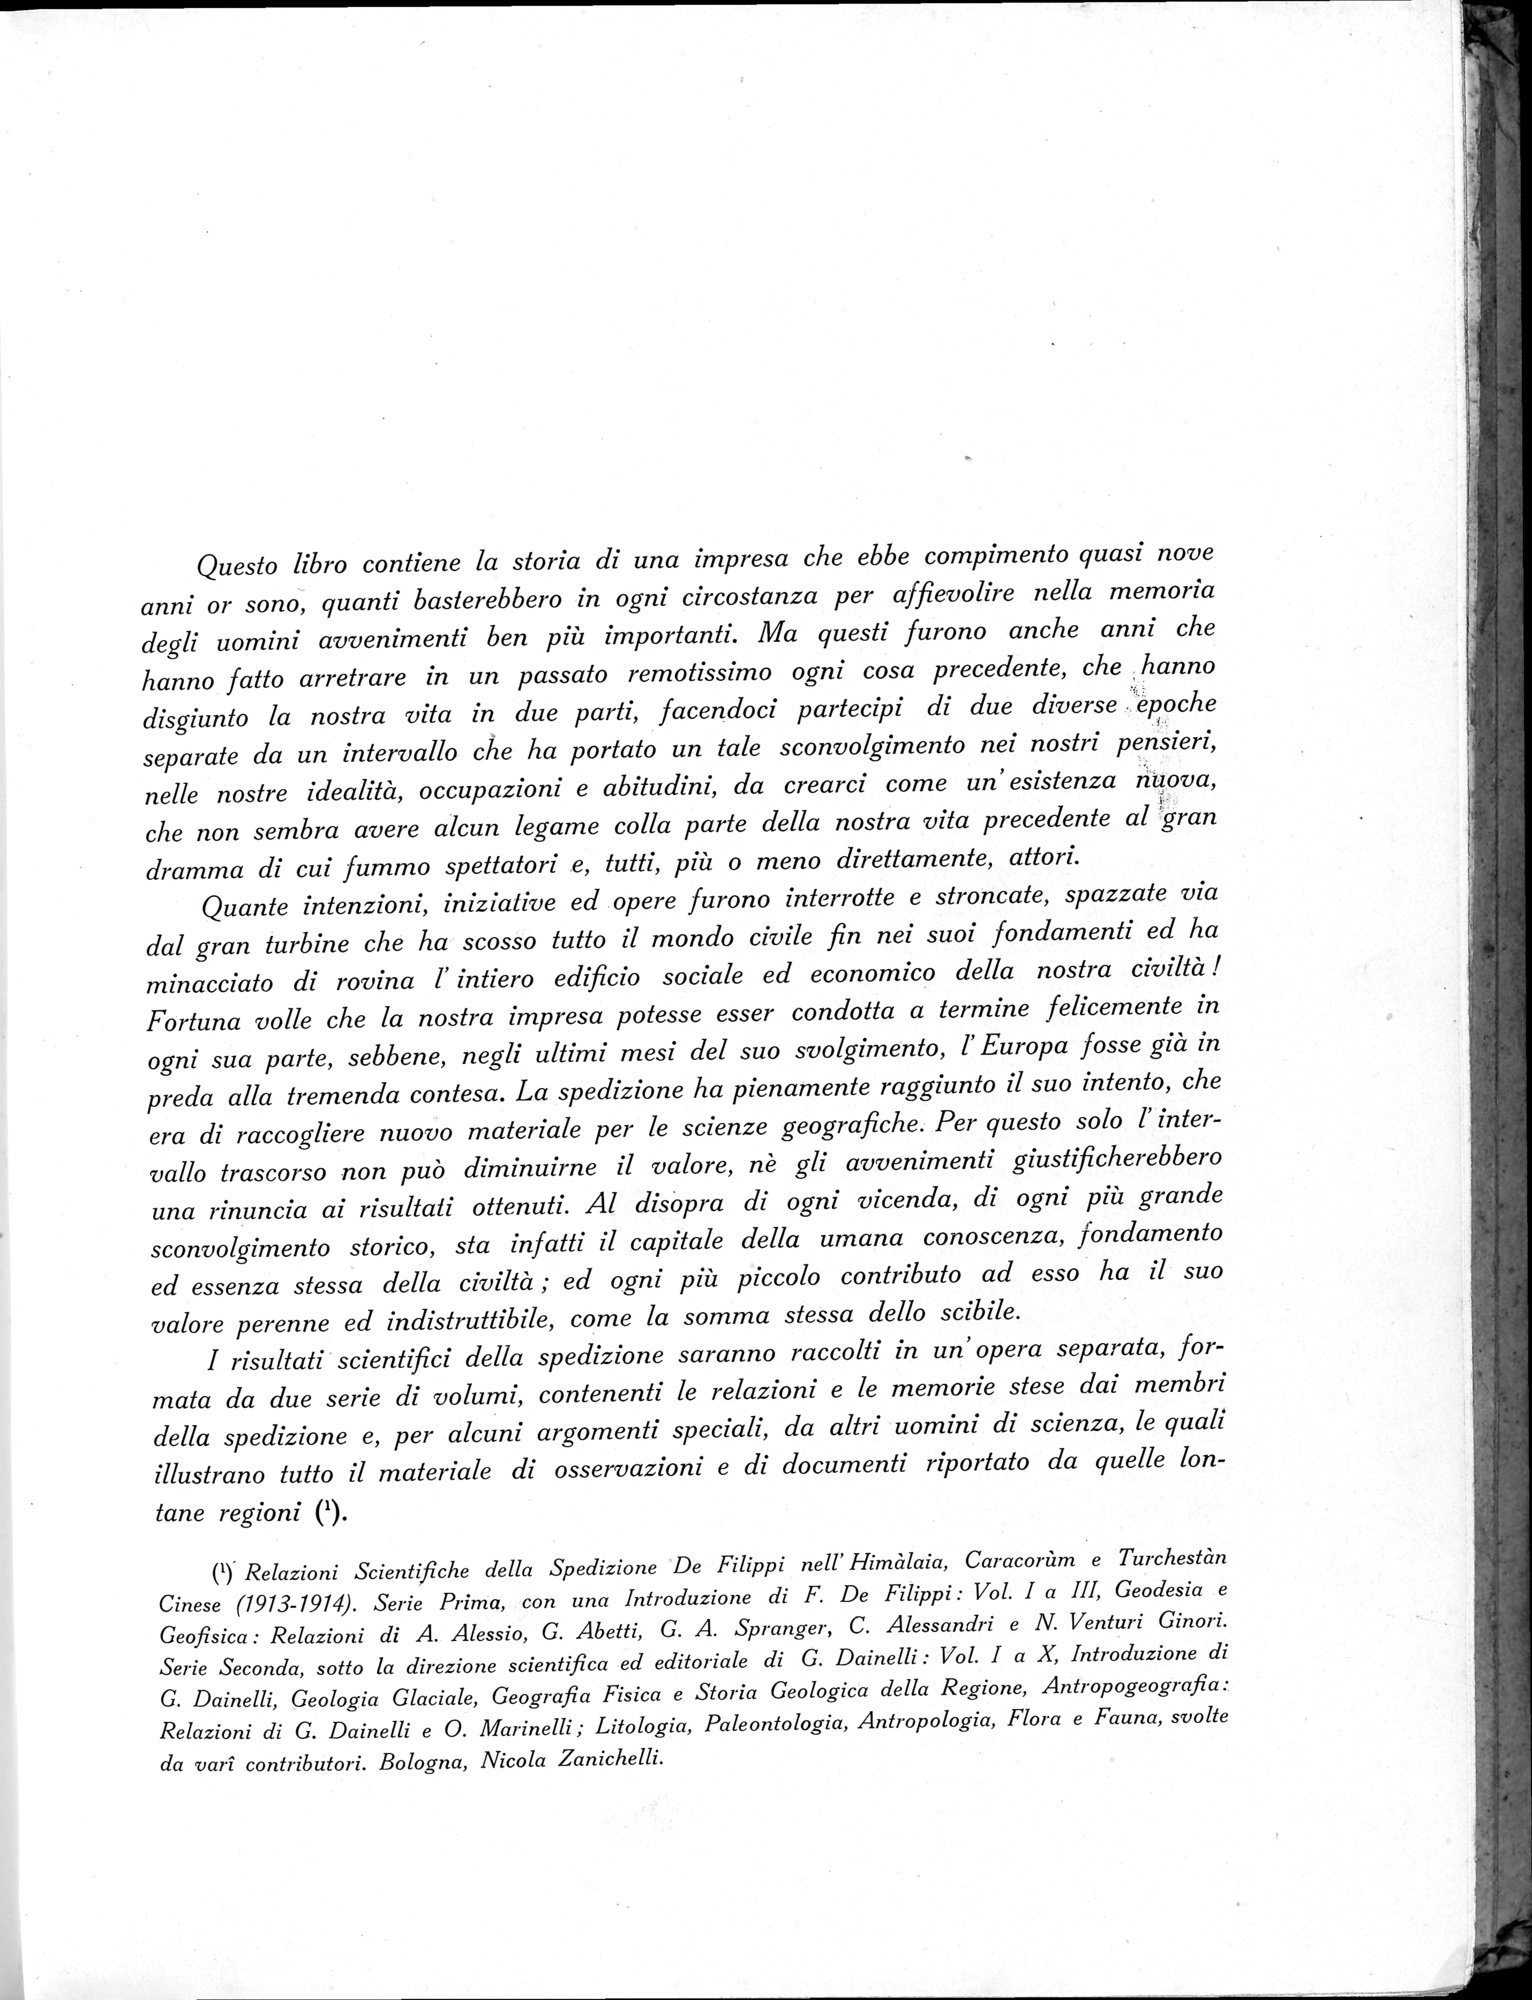 Storia della Spedizione Scientifica Italiana nel Himàlaia, Caracorùm e Turchestàn Cinese(1913-1914) : vol.1 / Page 15 (Grayscale High Resolution Image)